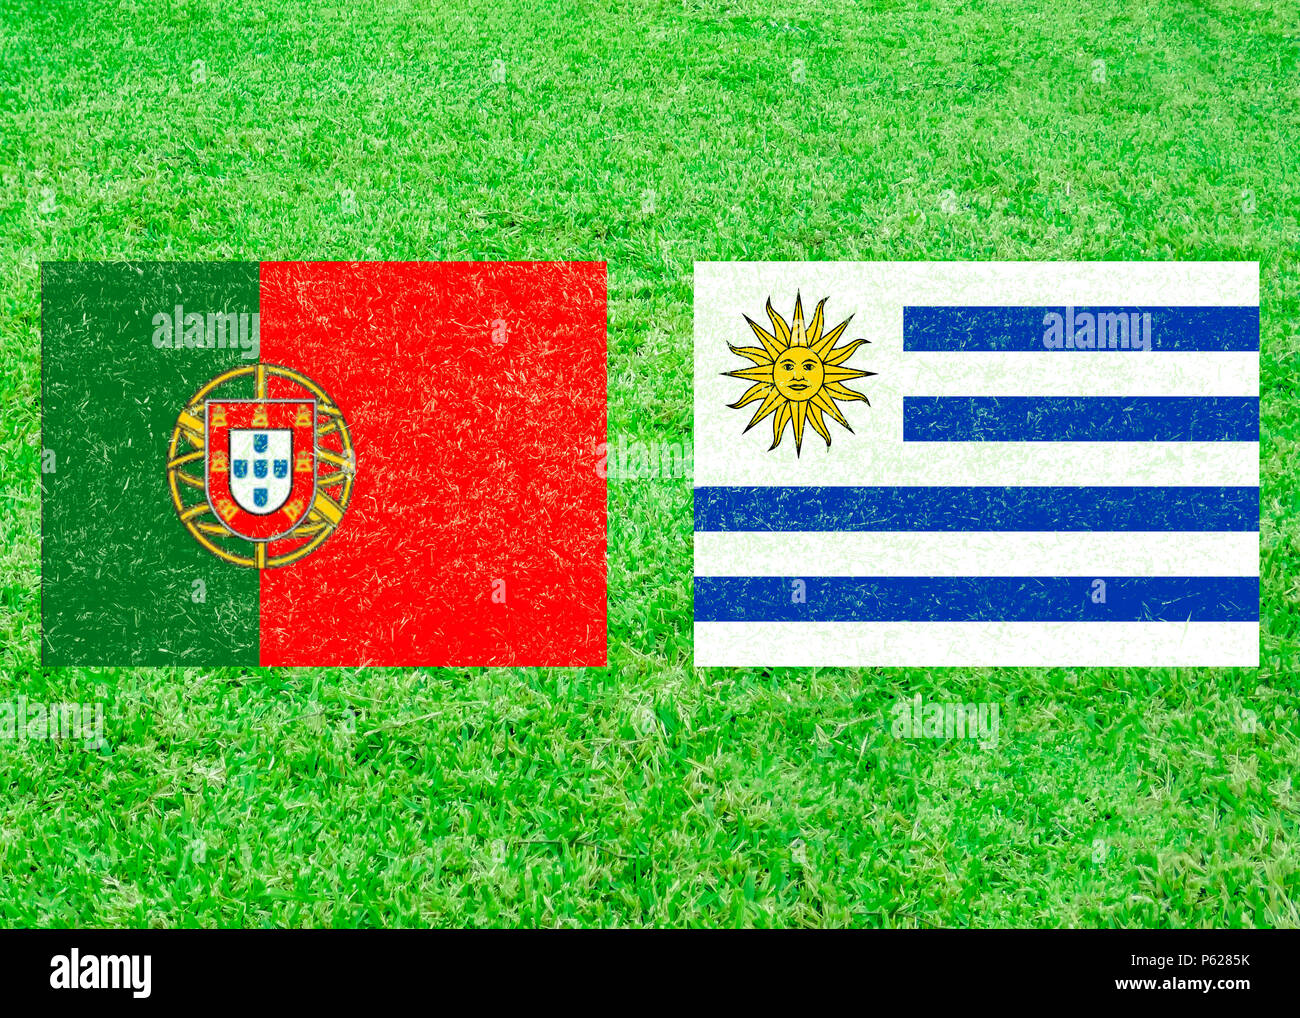 Il Portogallo versus Uruguay icona flag su sfondo di erba Foto Stock